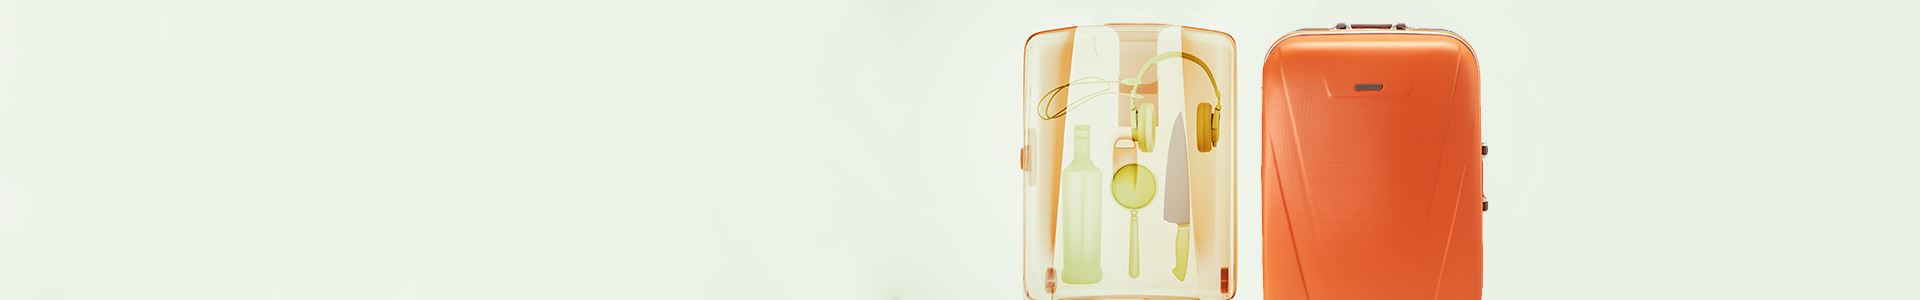 Fotografia de uma mala de viagem de cor laranja do género trolley com a radiografia do seu interior no lado esquerdo. Na radiografia existem diversos artigos, nomeadamente: uma faca, uns auscultadores, uma garrafa e uma lupa.